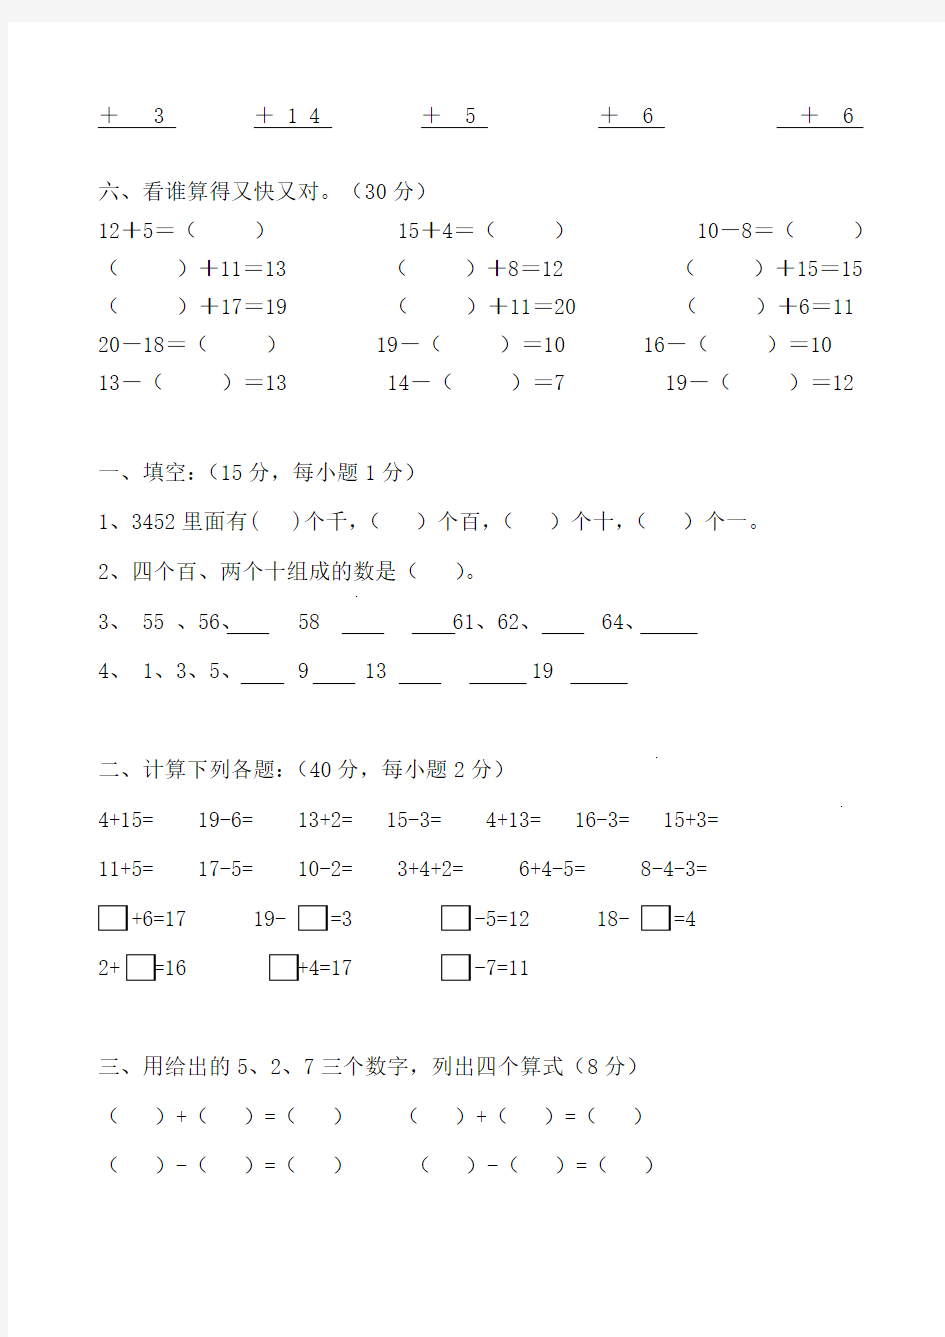 (完整版)幼小衔接数学练习题-A4打印版(11)